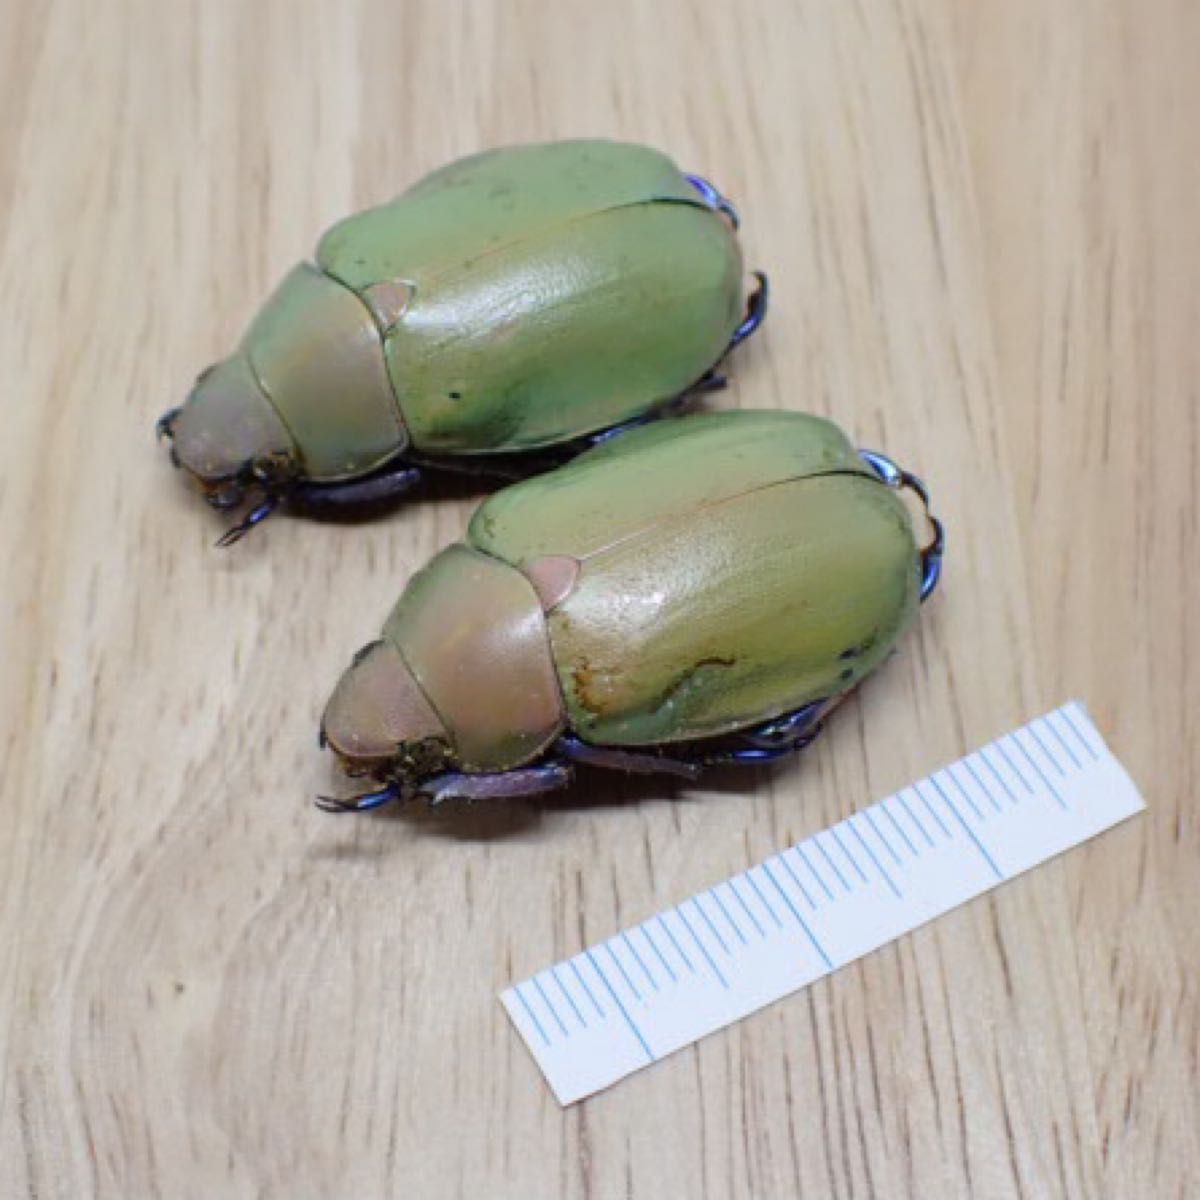 [昆虫標本] Chrysina erubescens no.169メキシコの宝石コガネムシ